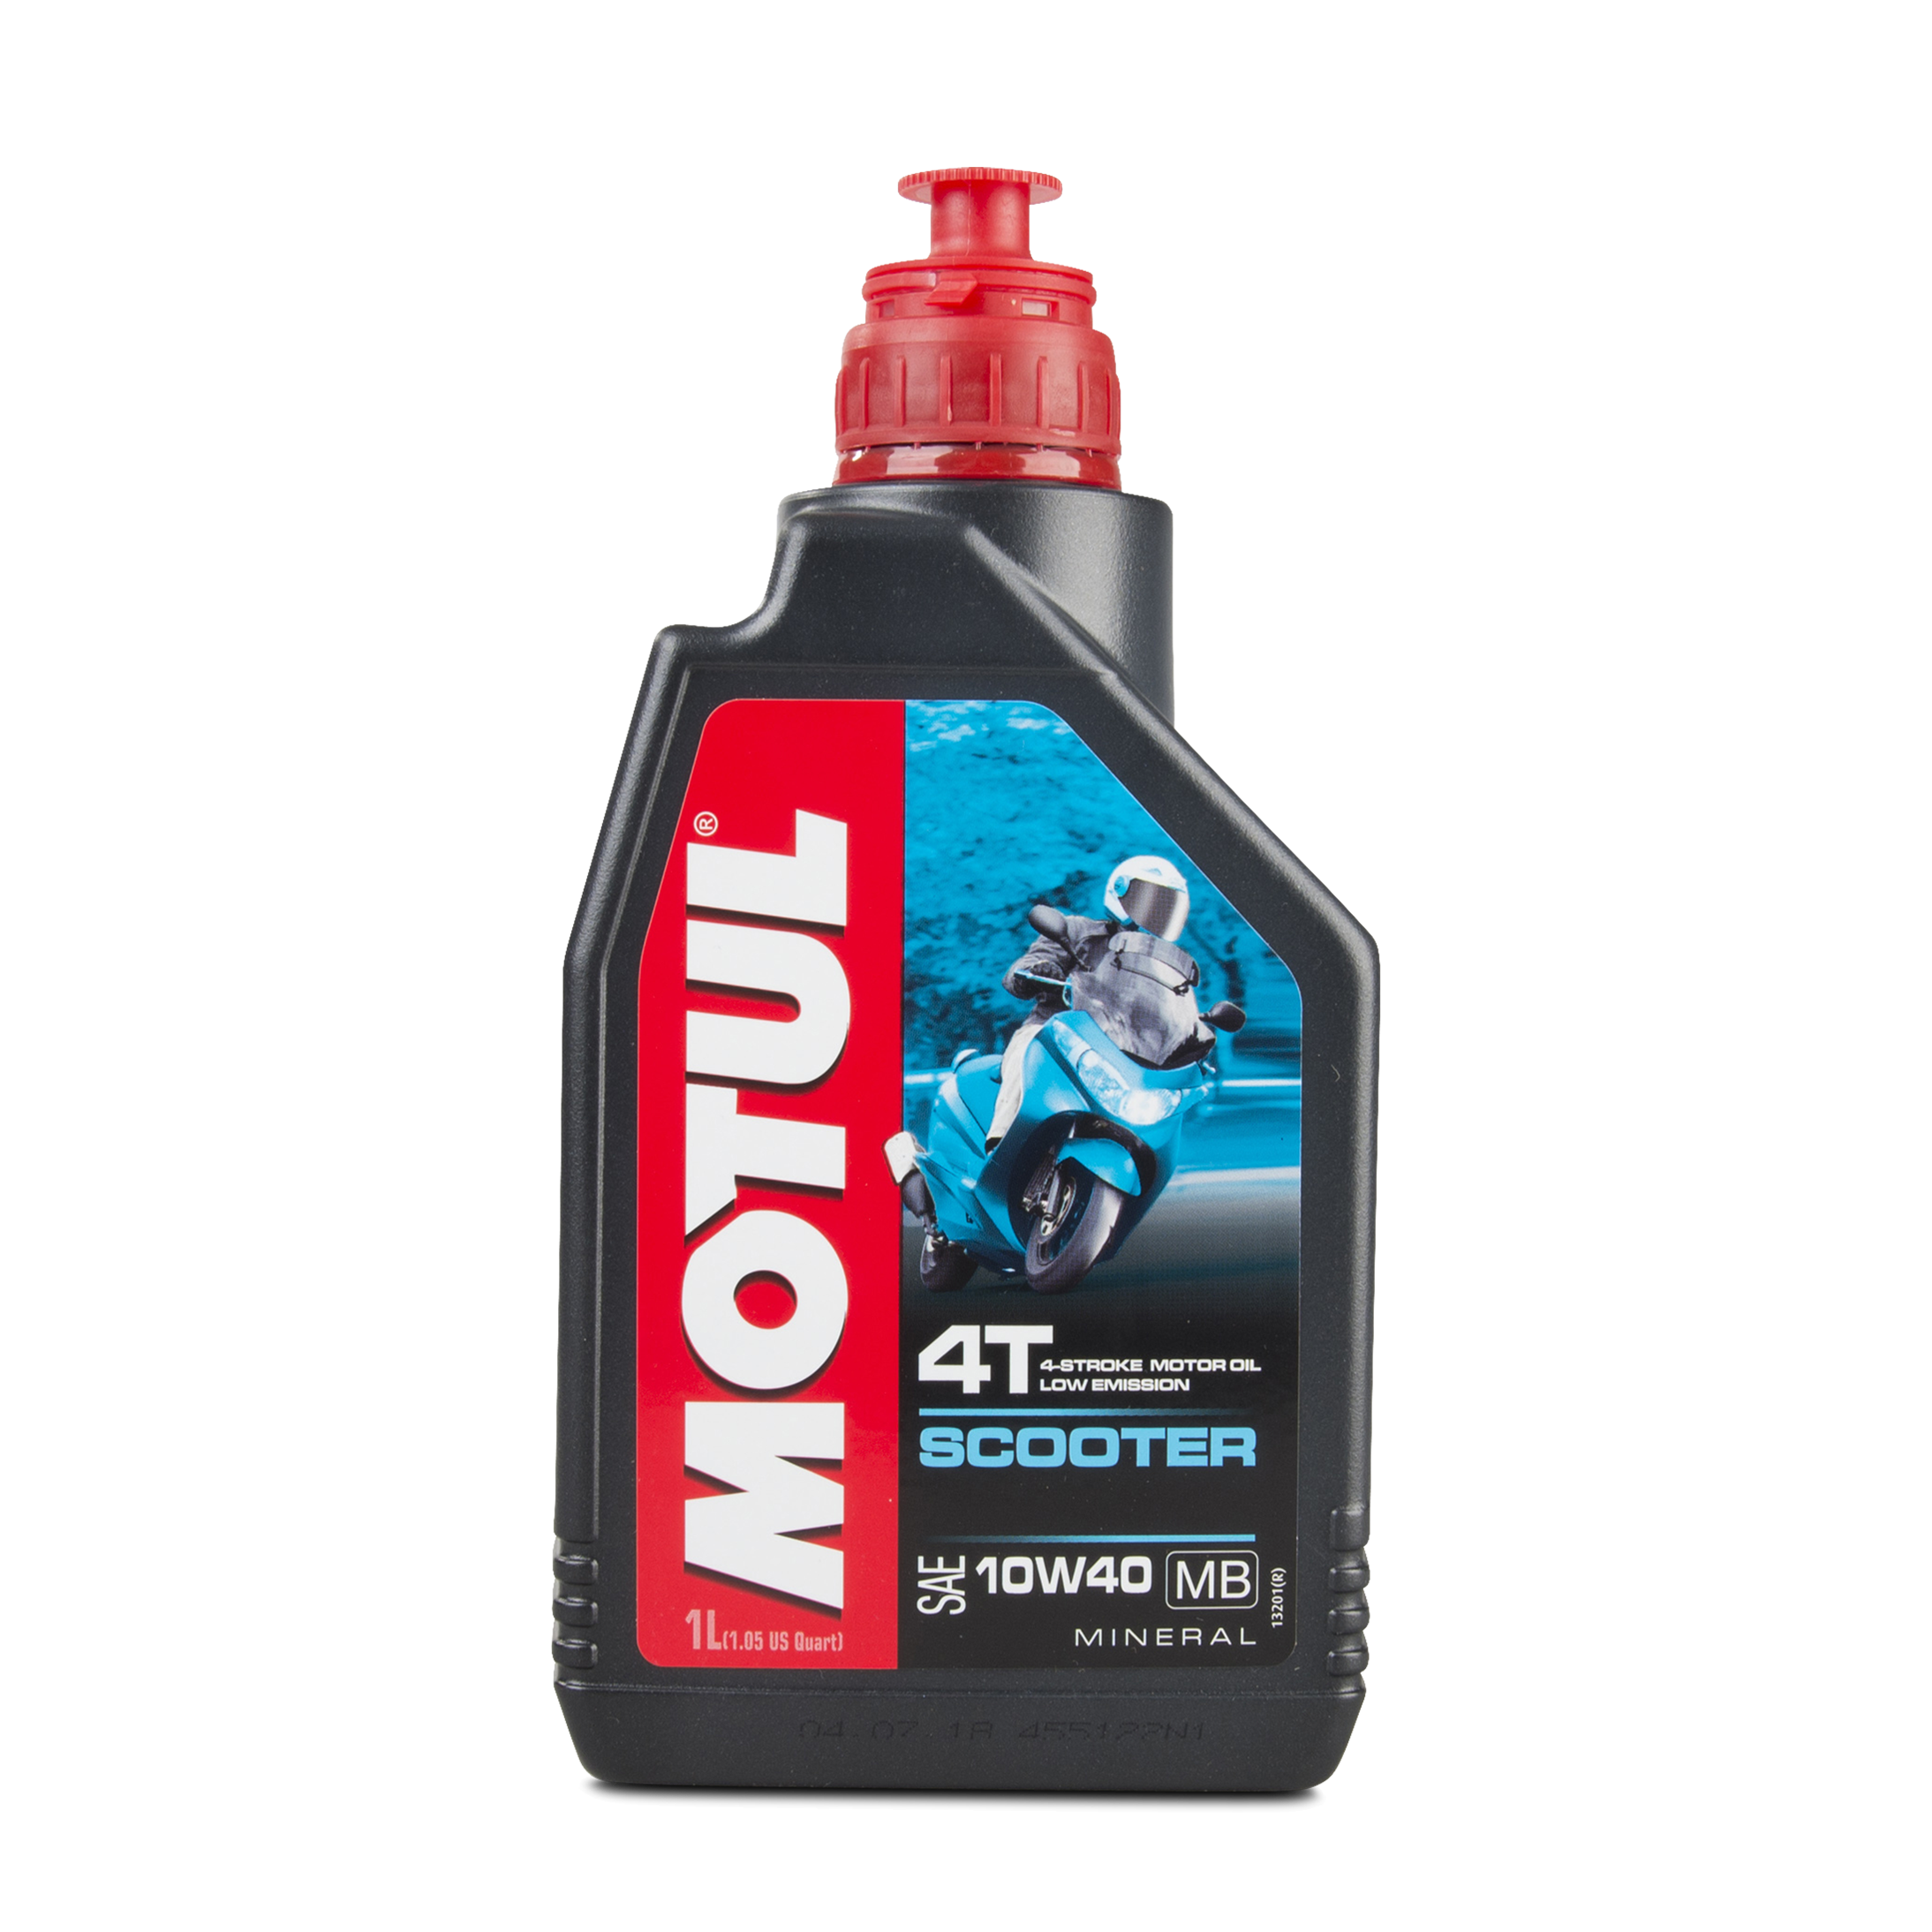 aceite-de-motor-motul-4t-scooter-10w40-mb-1l-ahora-con-un-36-de